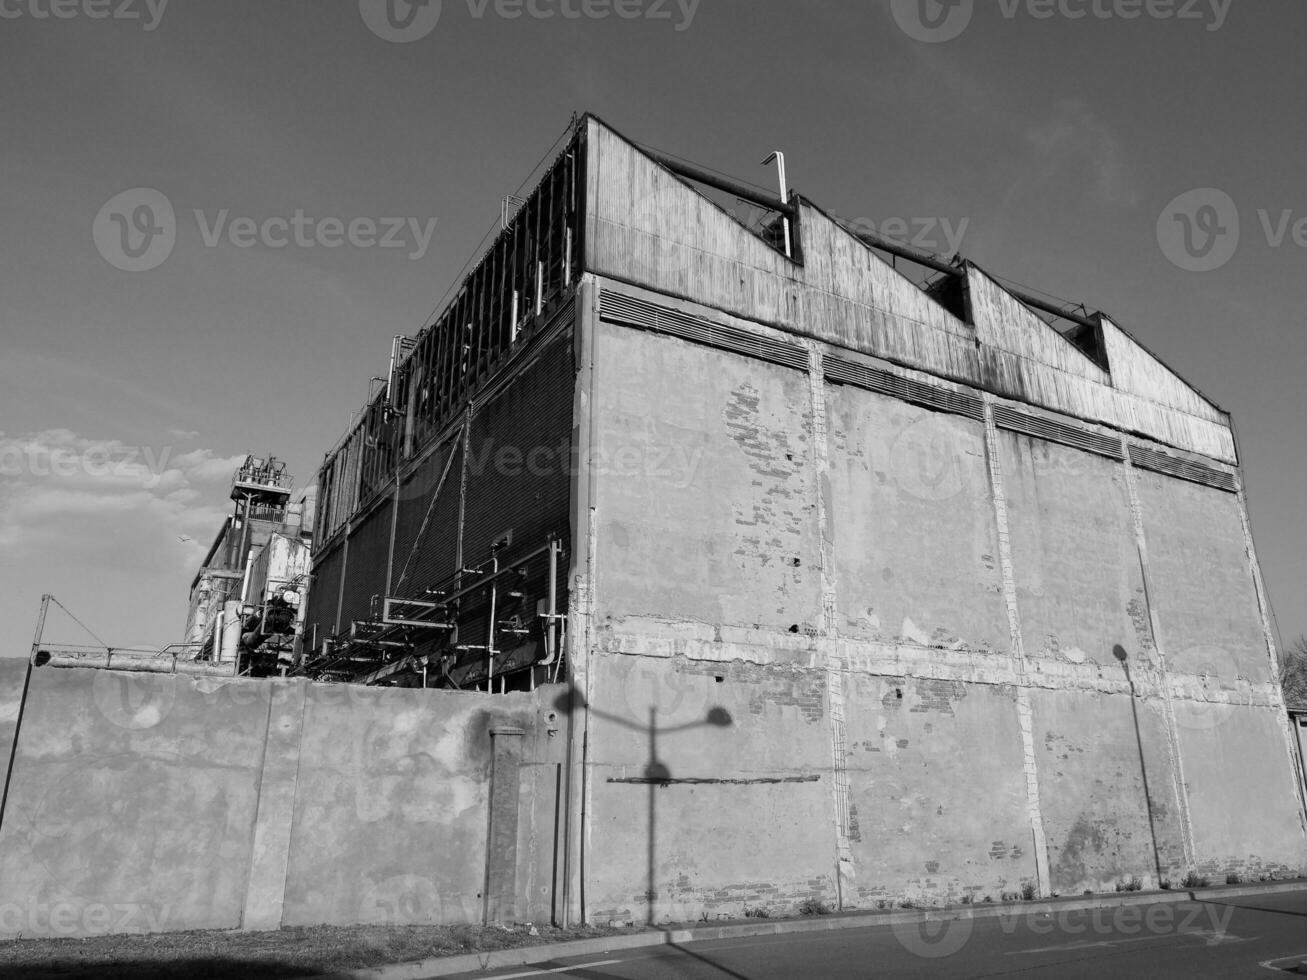 övergiven fabrik ruiner i svart och vit foto